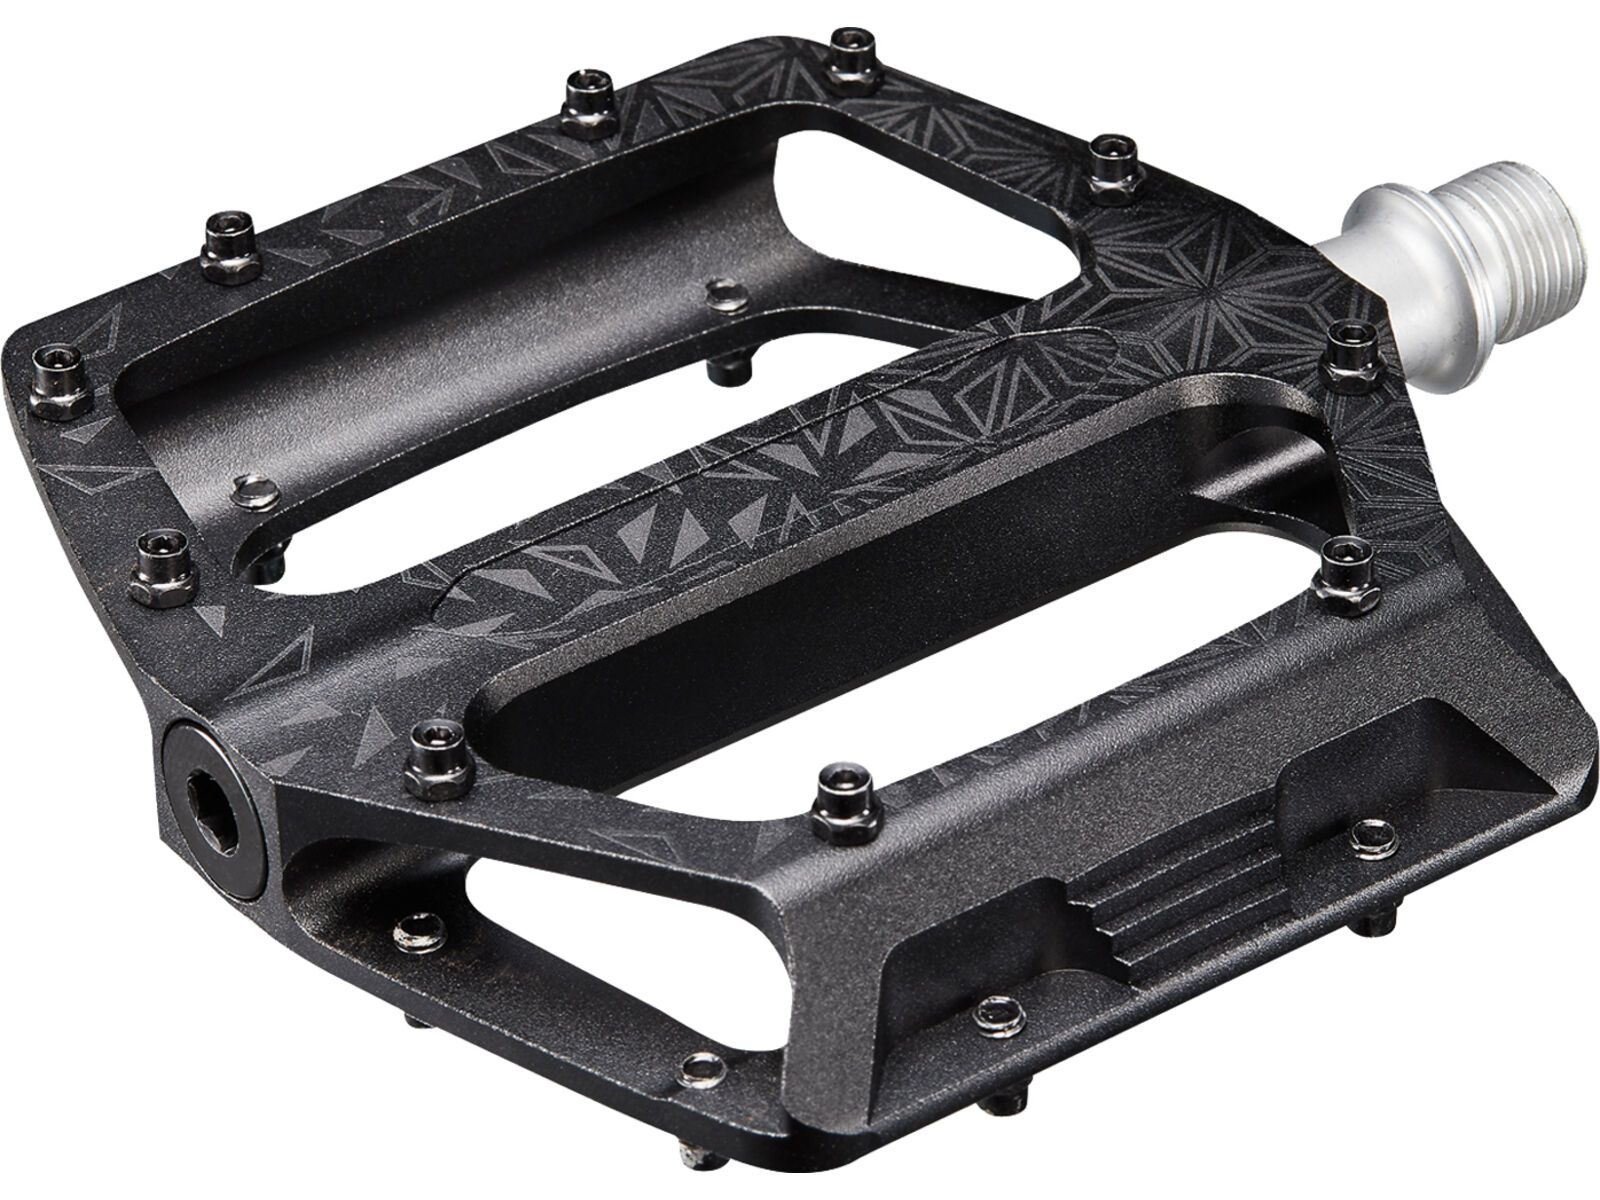 Supacaz Krypto CNC Alloy Pedal, black | Bild 2